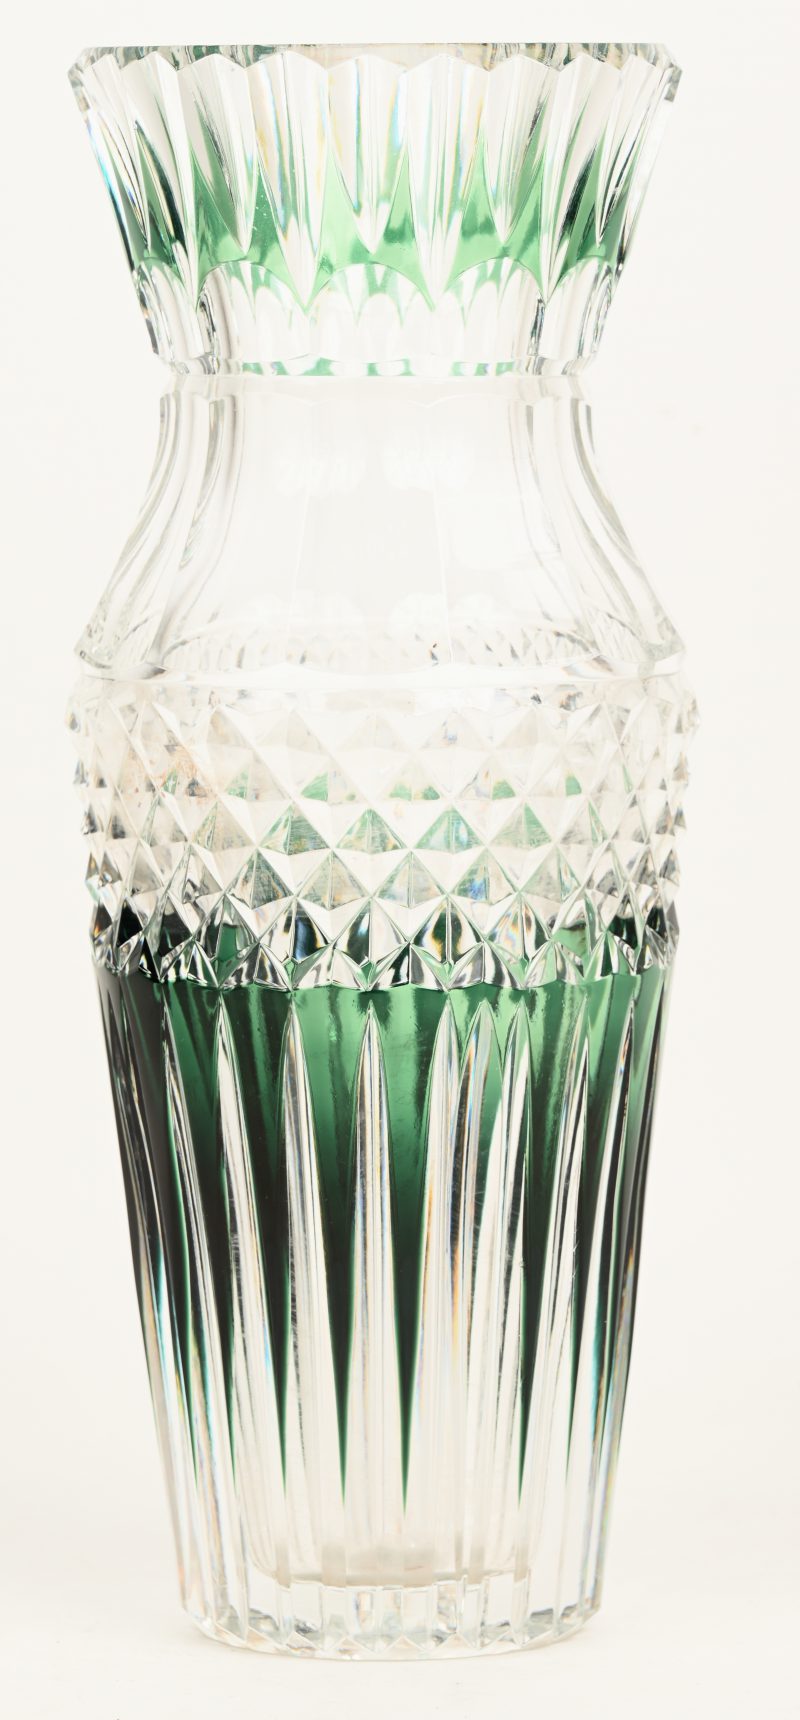 Een geslepen kristallen vaas met groene accenten. Onderaan gesigneerd.